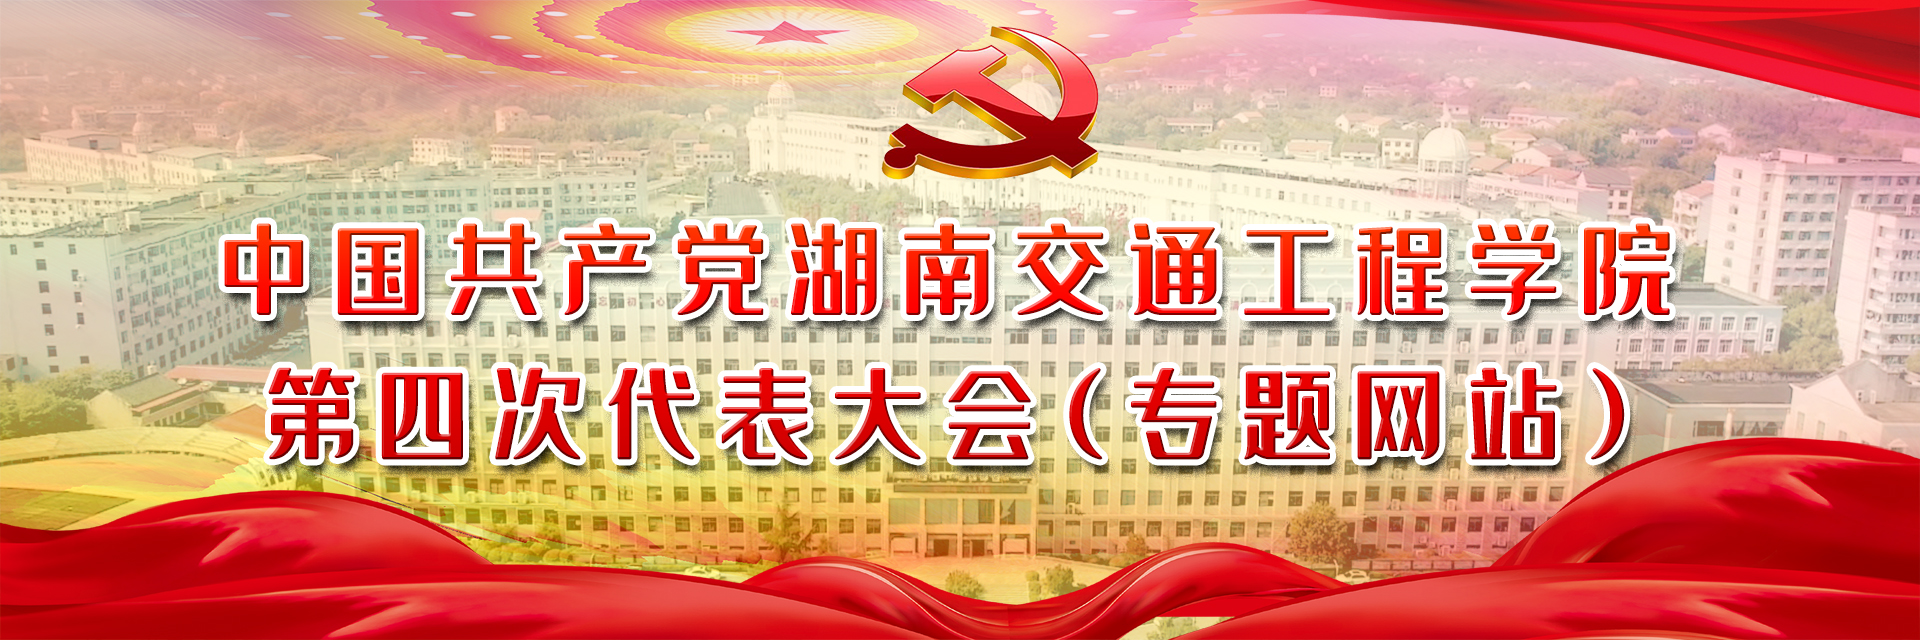 中国共产党湖南交通工程学院第四次代表大会